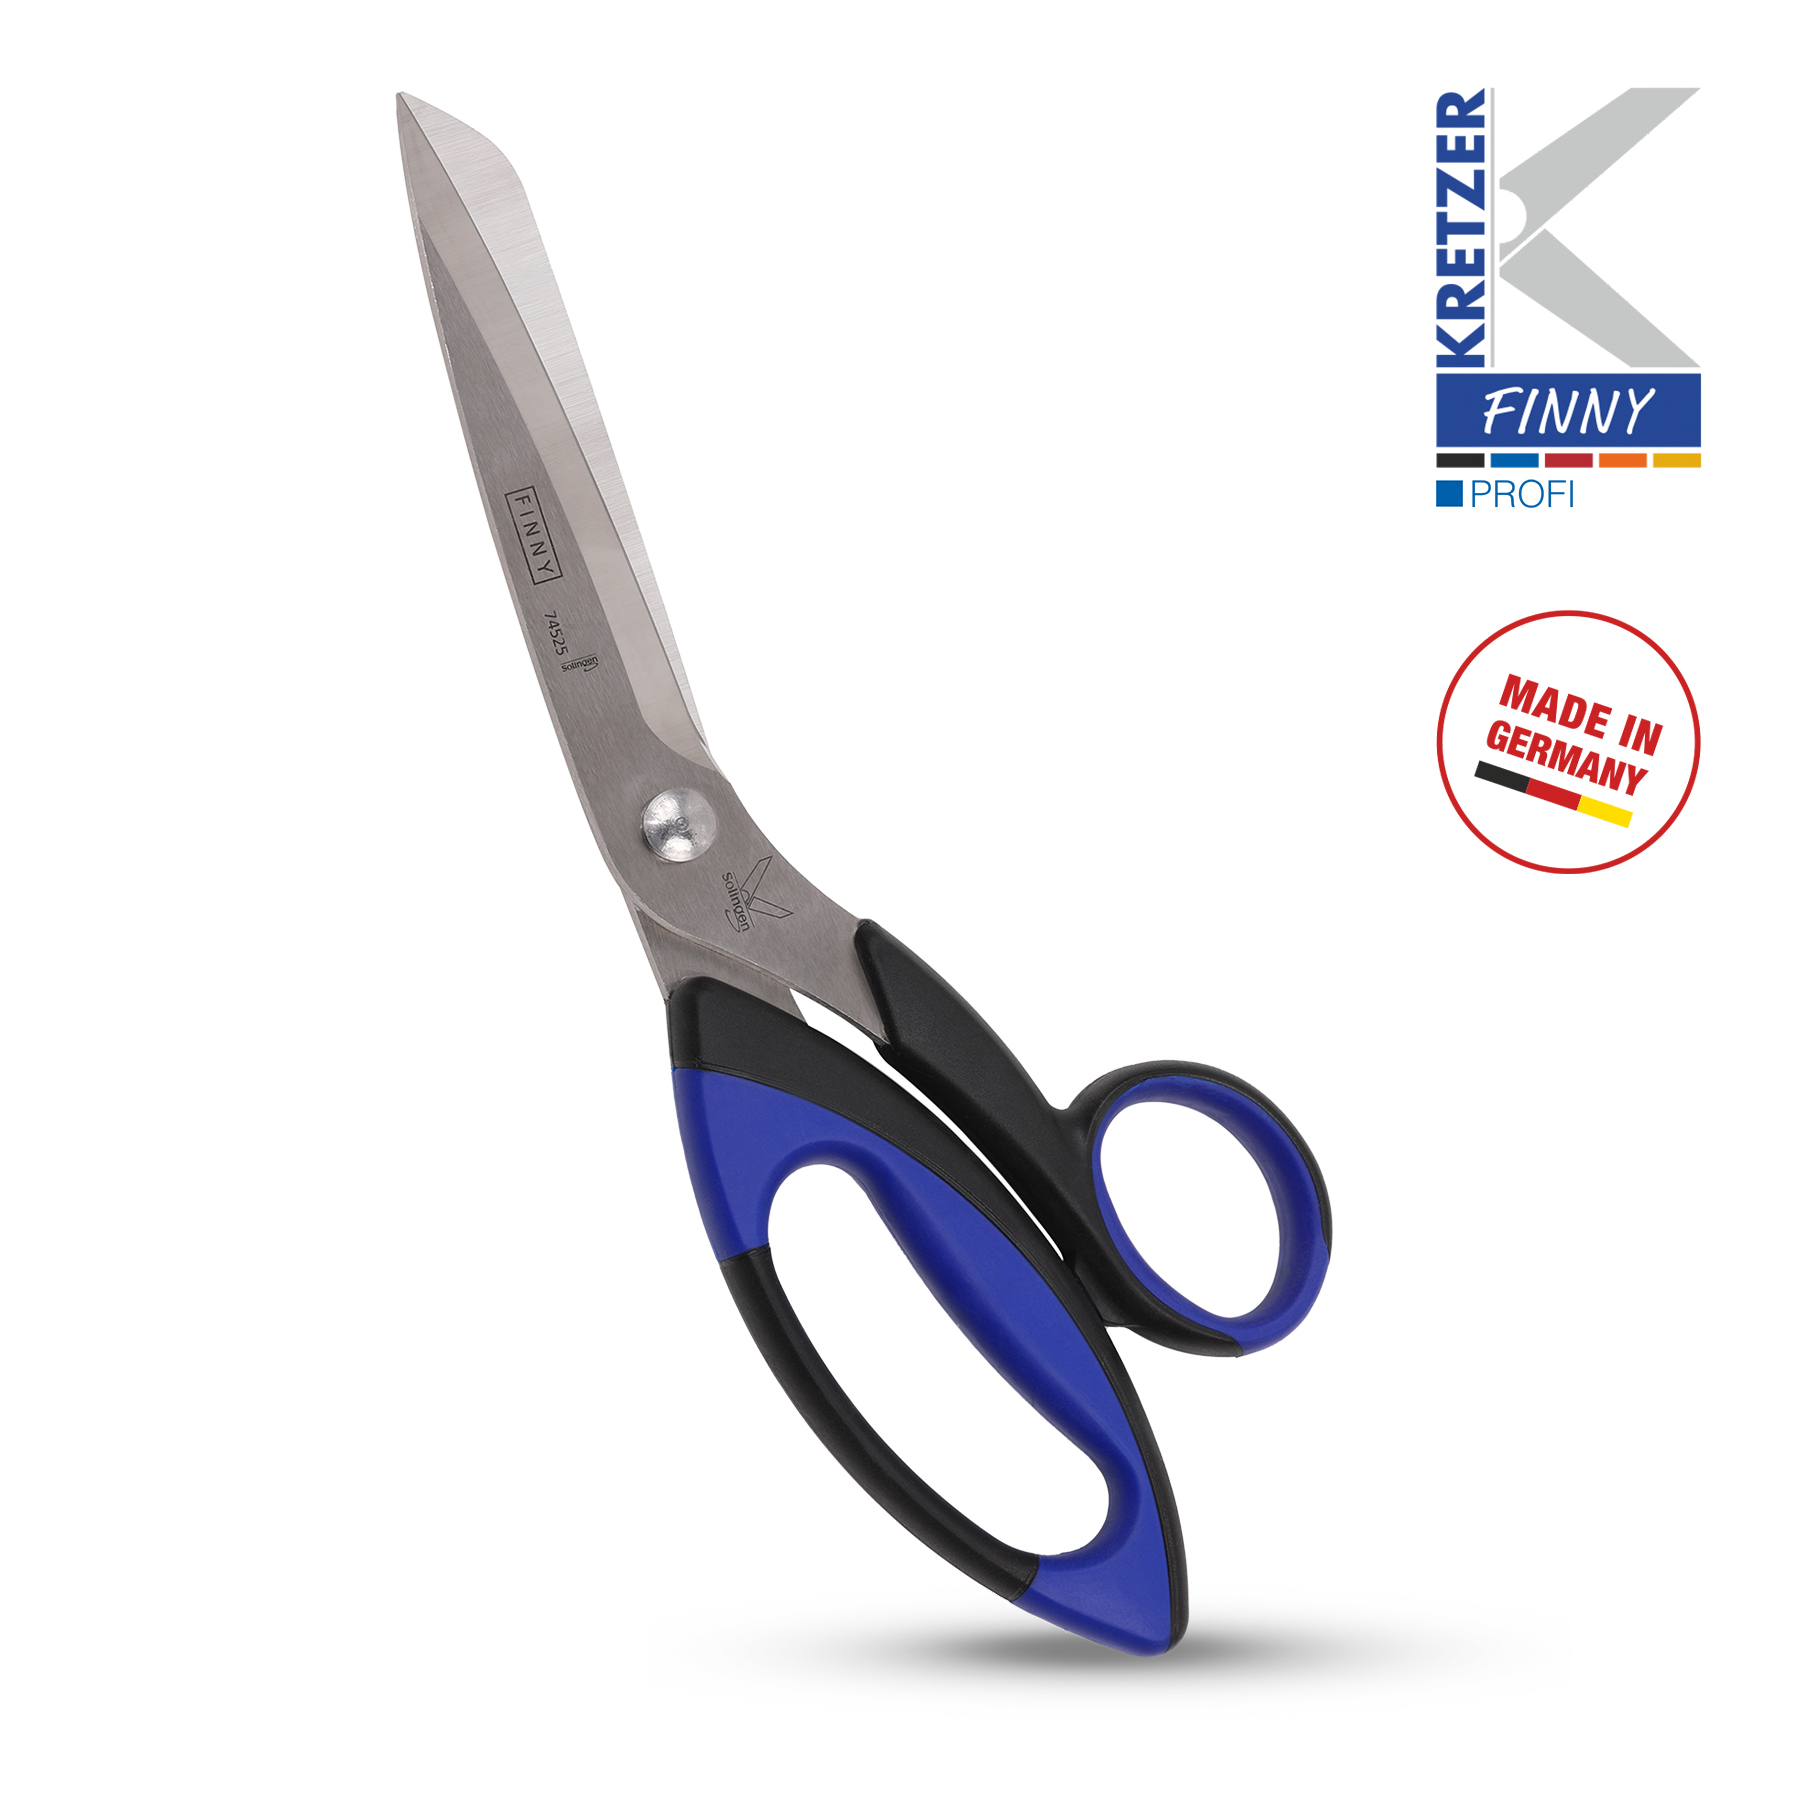 Kretzer 72020 Household & Textile Scissors - 8 1/2